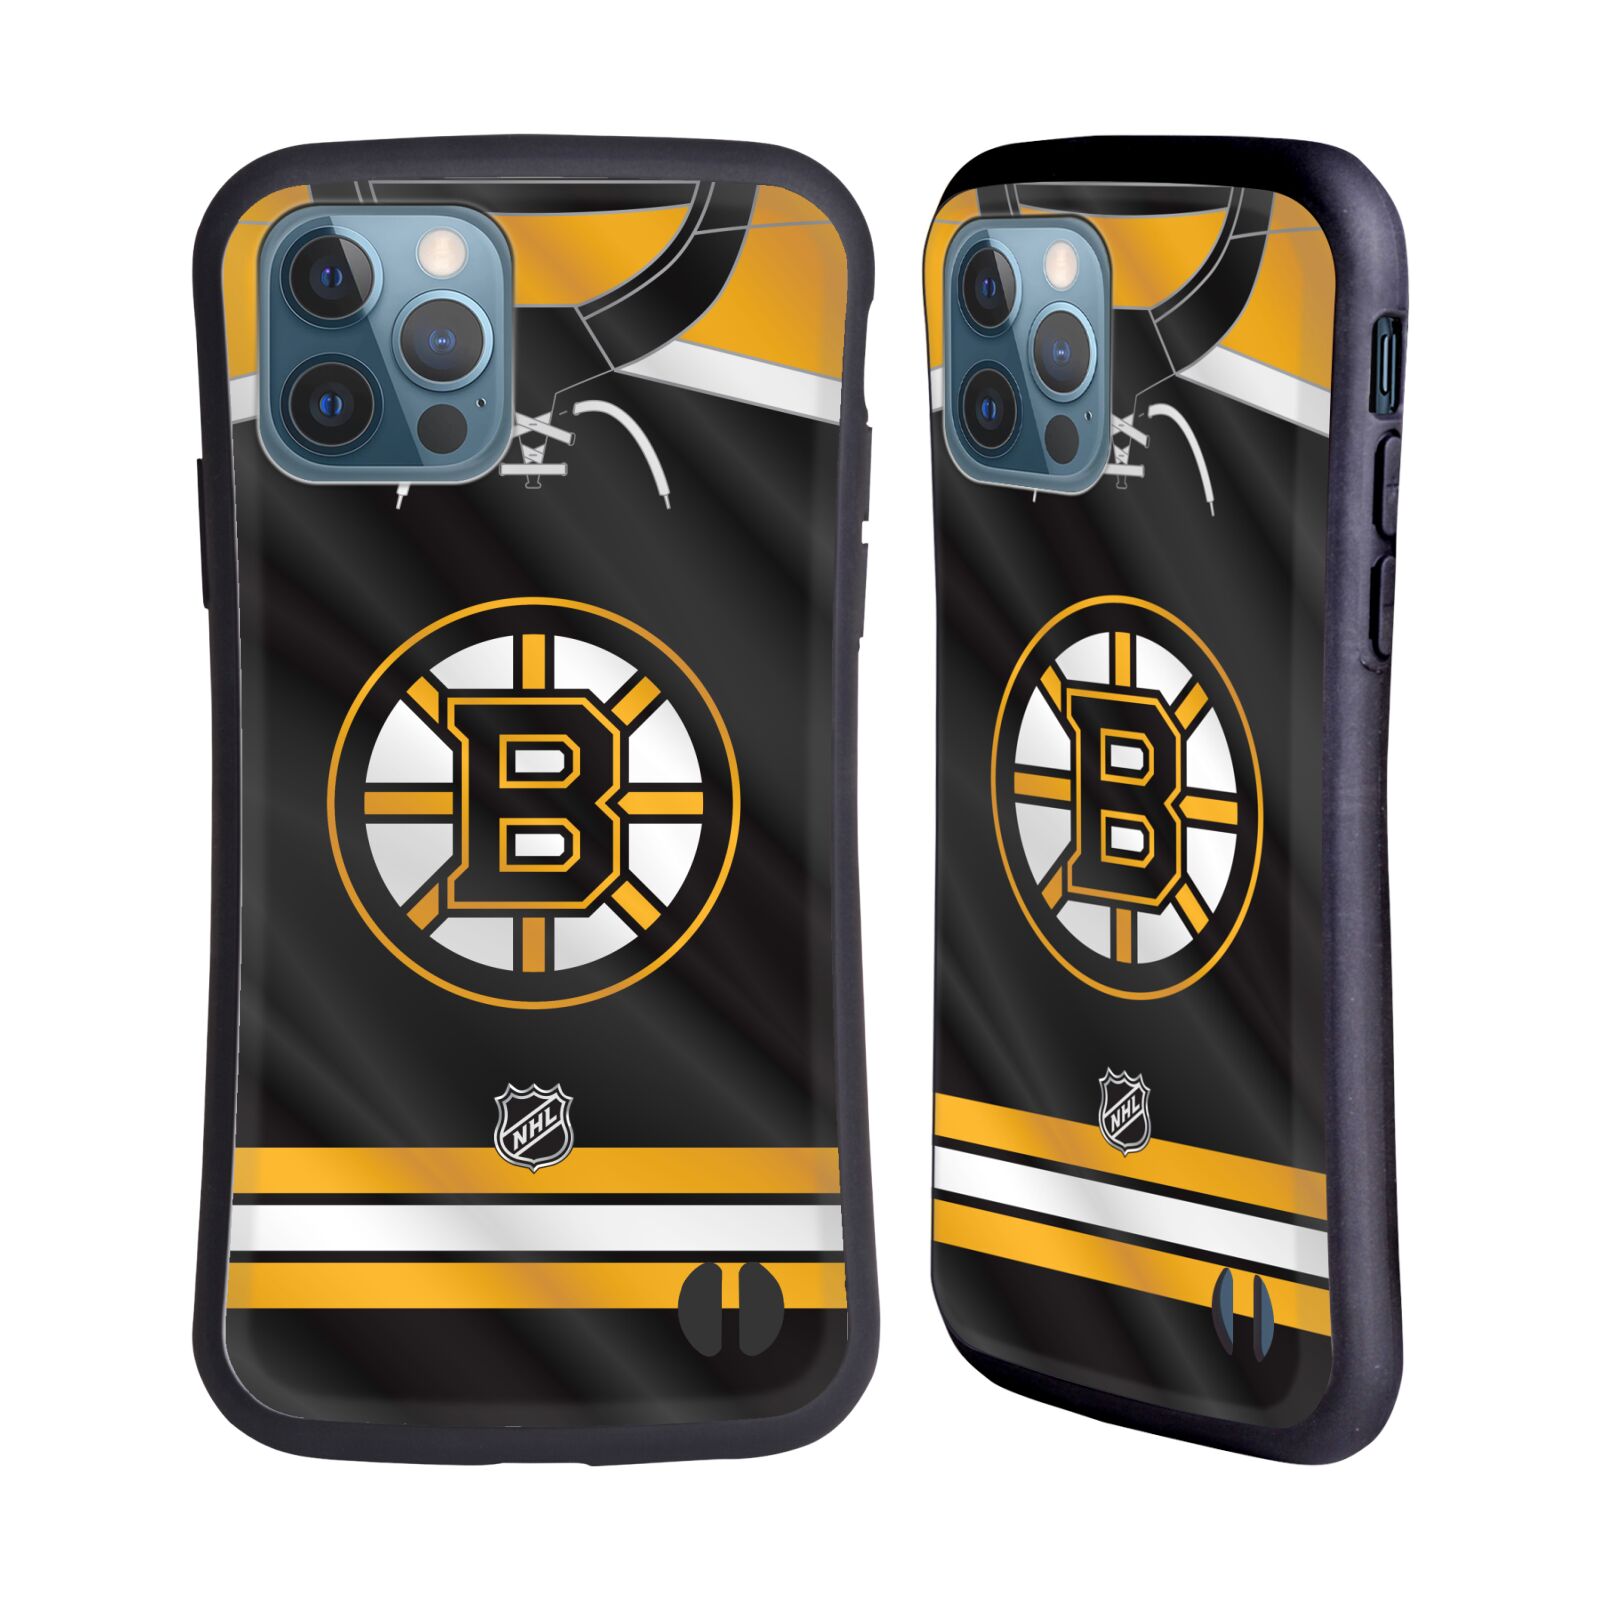 Obal na mobil Apple iPhone 12 / 12 PRO - HEAD CASE - NHL - Boston Bruins znak na dresu